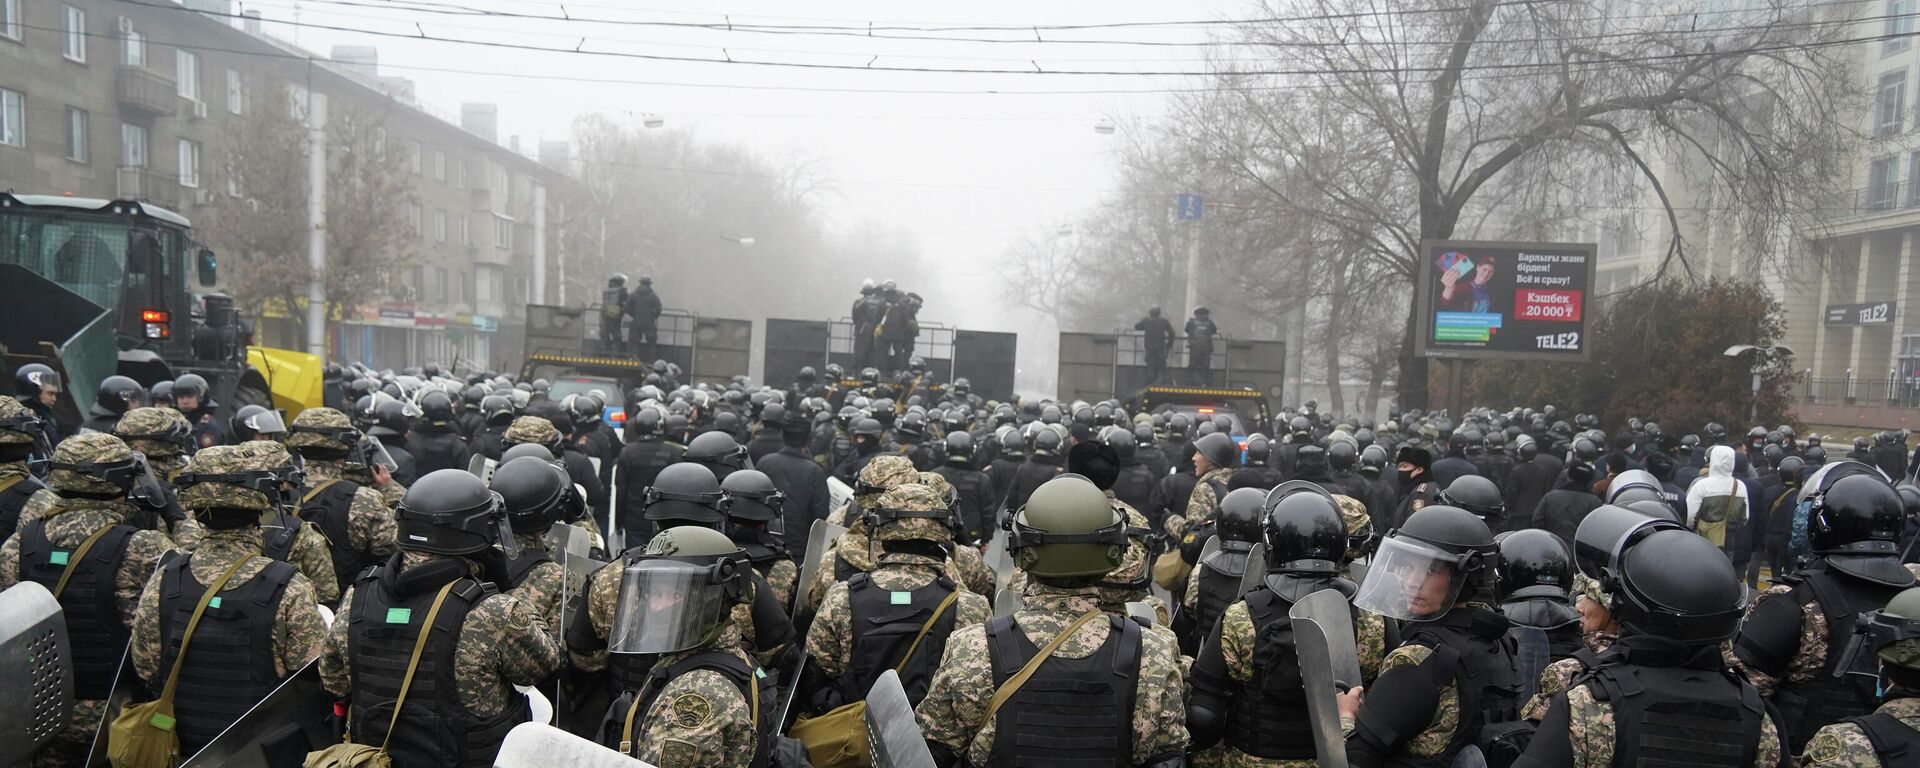 Pripadnici interventne policije blokiraju demonstrante u Alma Ati u Kazahstanu - Sputnik Srbija, 1920, 05.01.2022